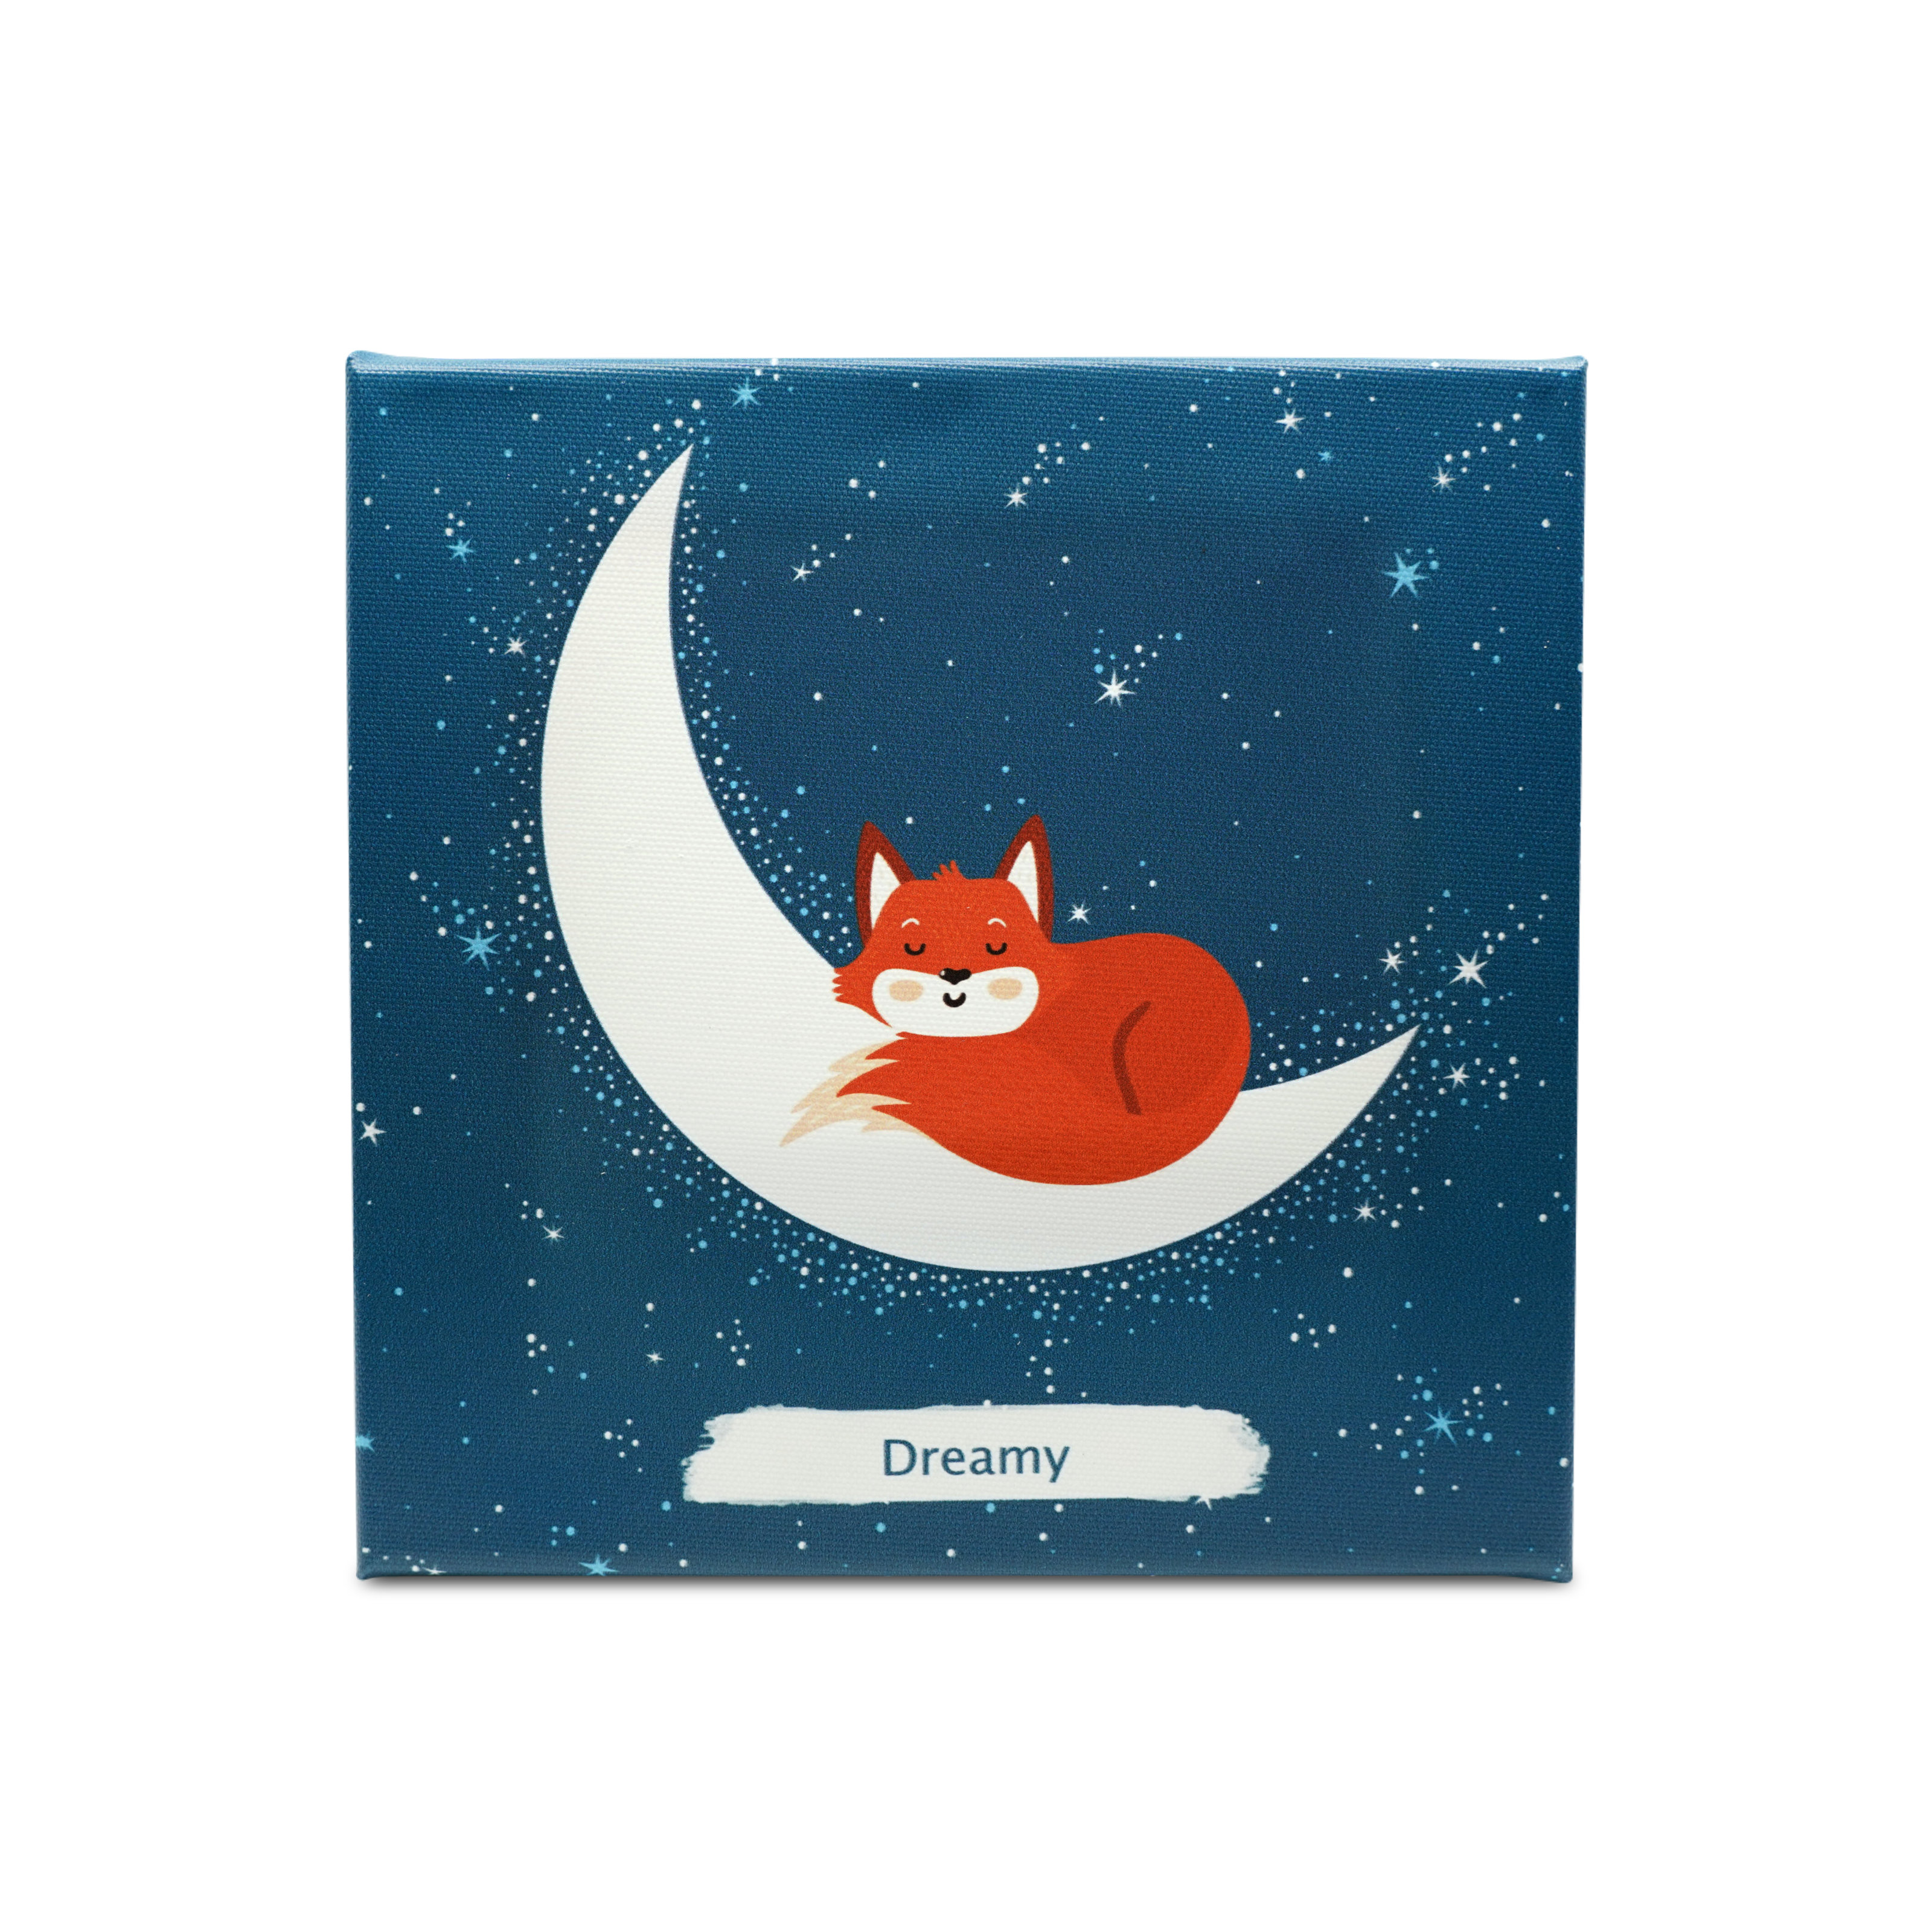 NFC Vibes "Dreamy" Musikbildwand mit dem Design schlafende Katze auf dem Mond